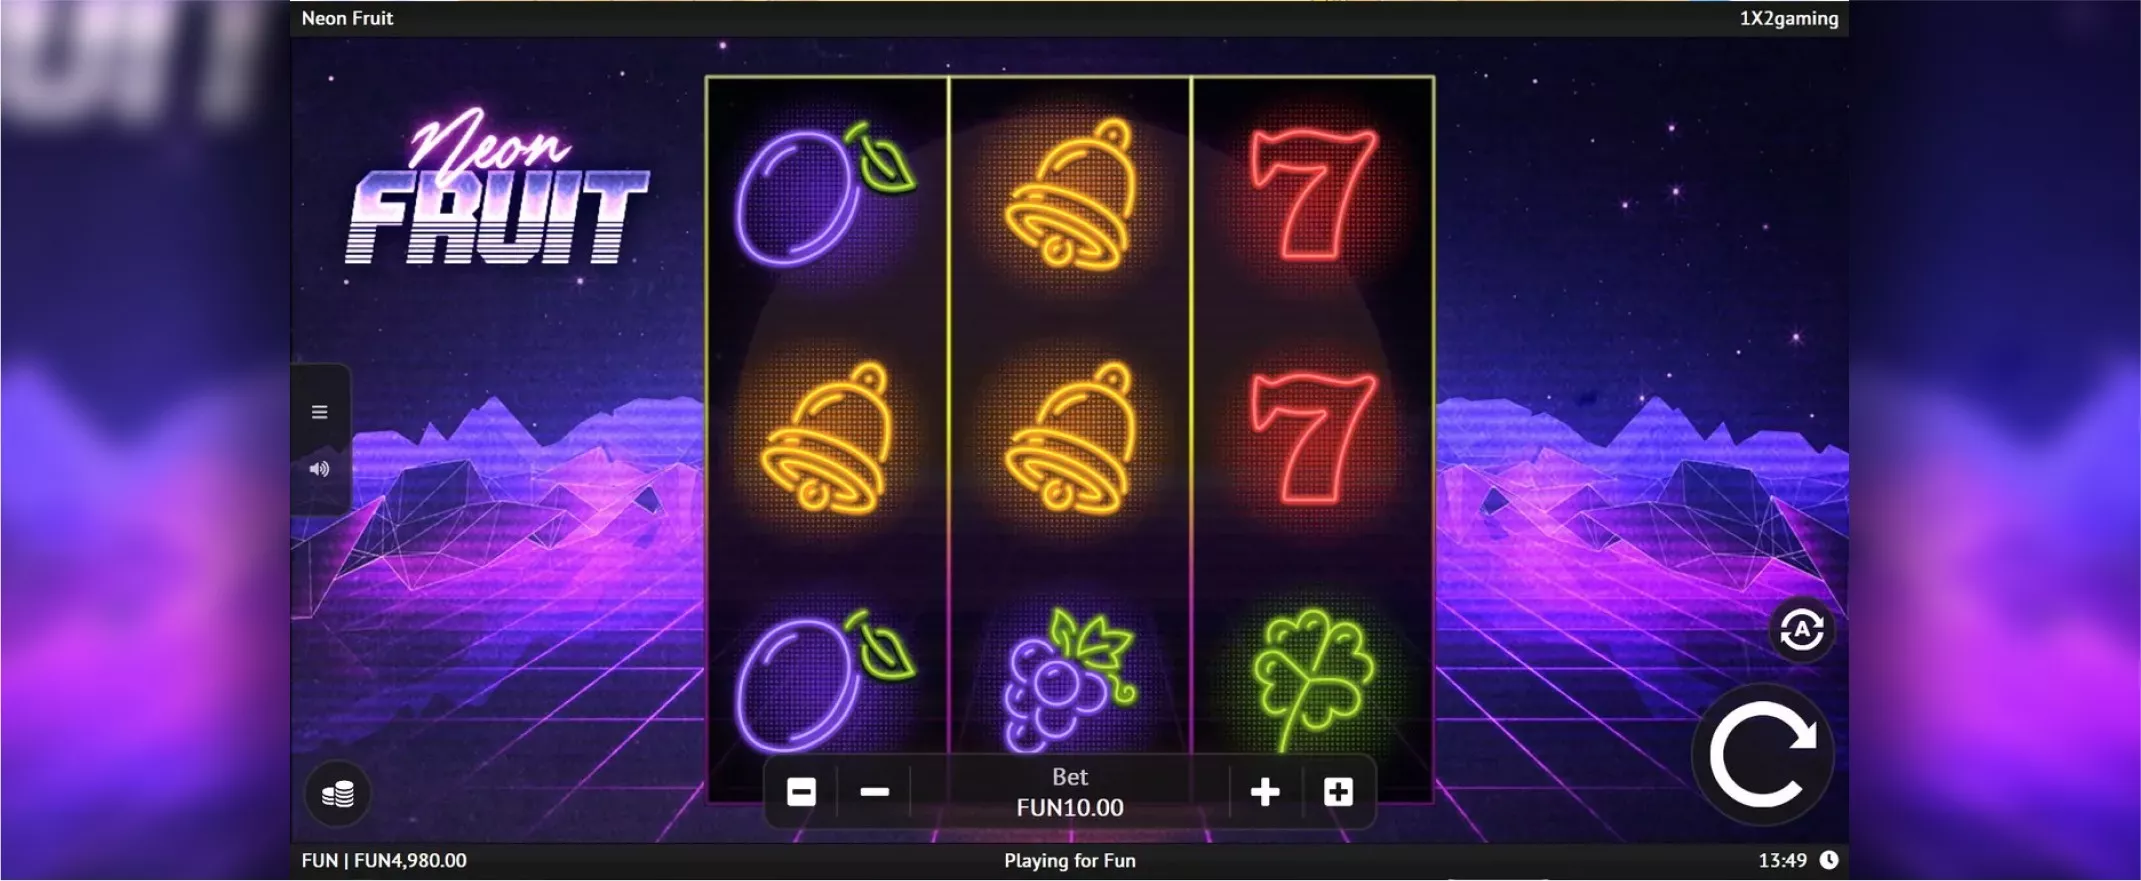 Captura de pantalla de Neon Fruit